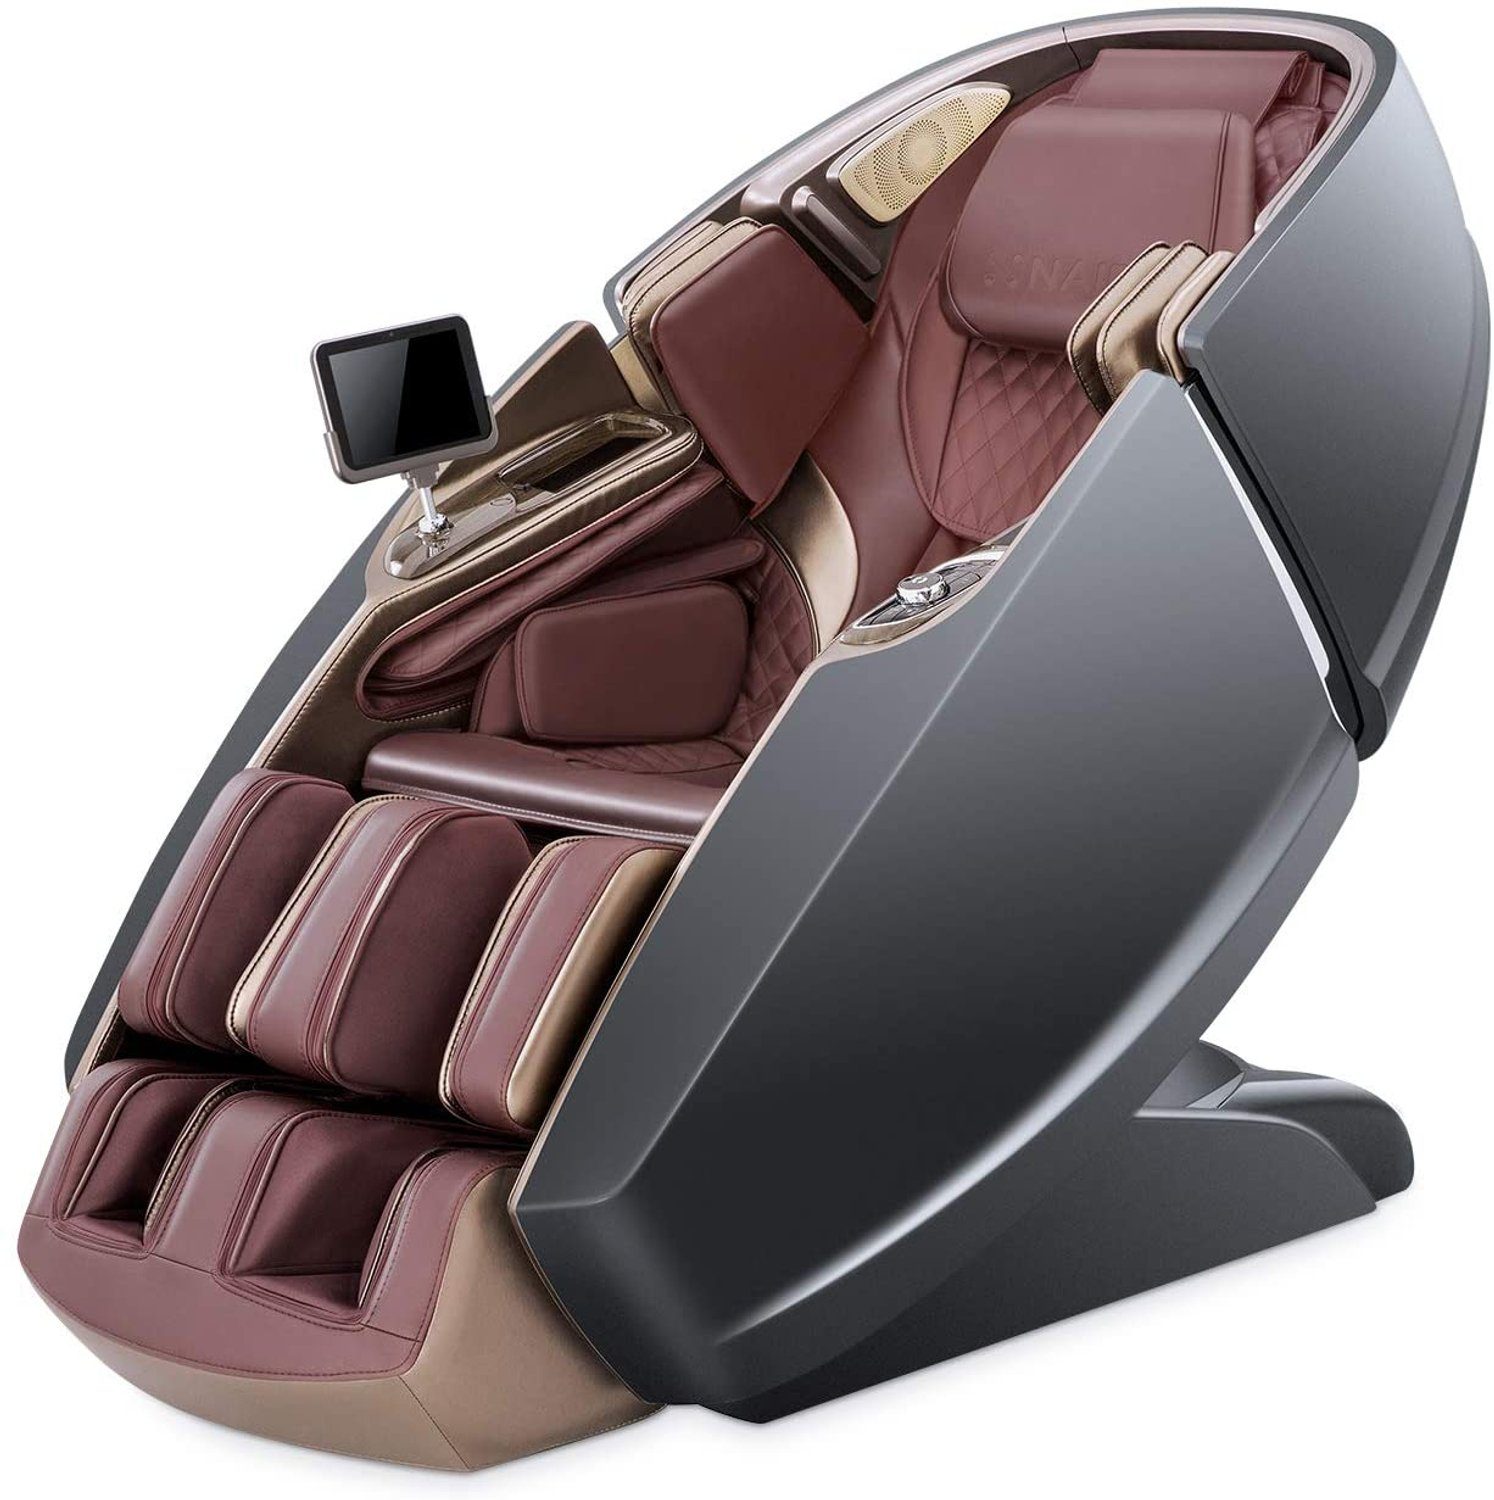 NAIPO Massagesessel, 3D High-End Massagestuhl mit Tablet, Raumkapsel-Design GRAU-ROT-AUFBAUSERVICE